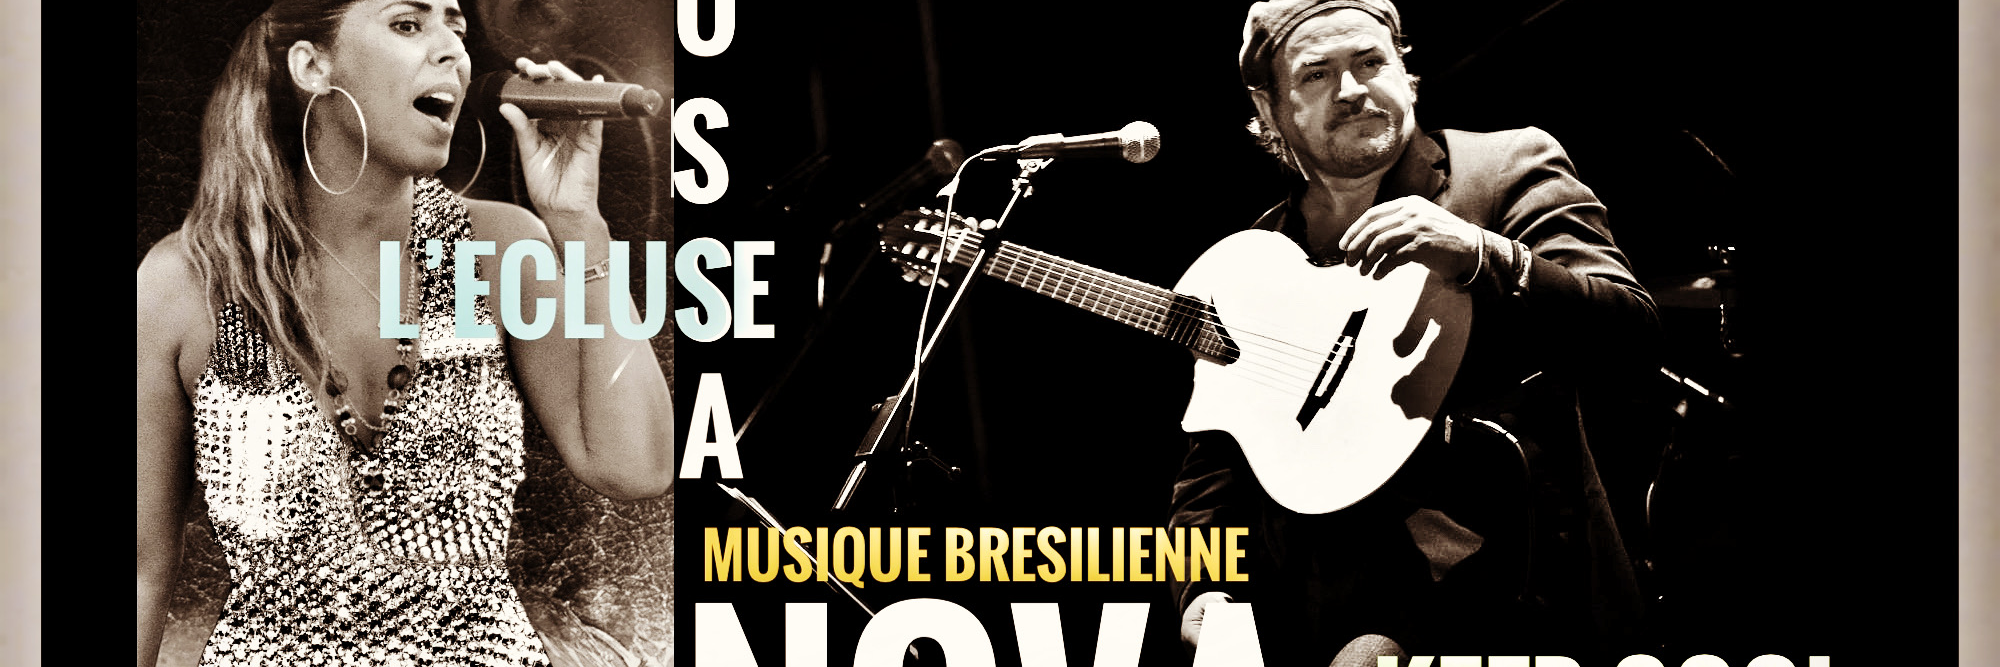 brazik And soul Events, groupe de musique Bossa Nova en représentation à Alpes Maritimes - photo de couverture n° 4